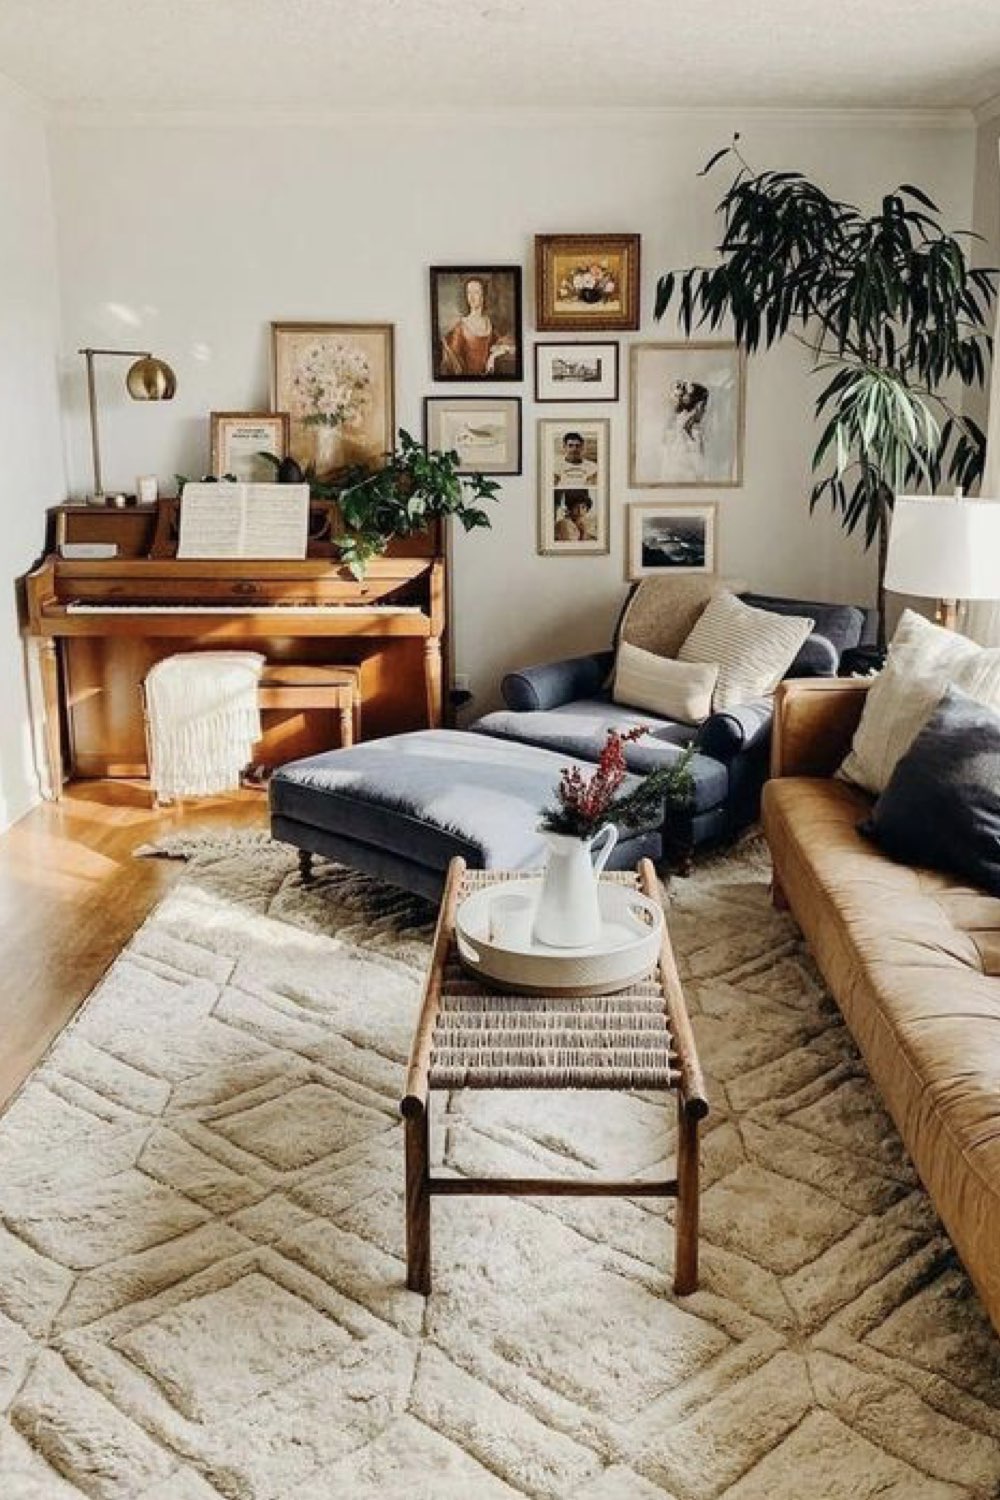 comment reussir deco salon méridienne grise tapis beige berbère moderne piano en bois décor mural cadre éclectique